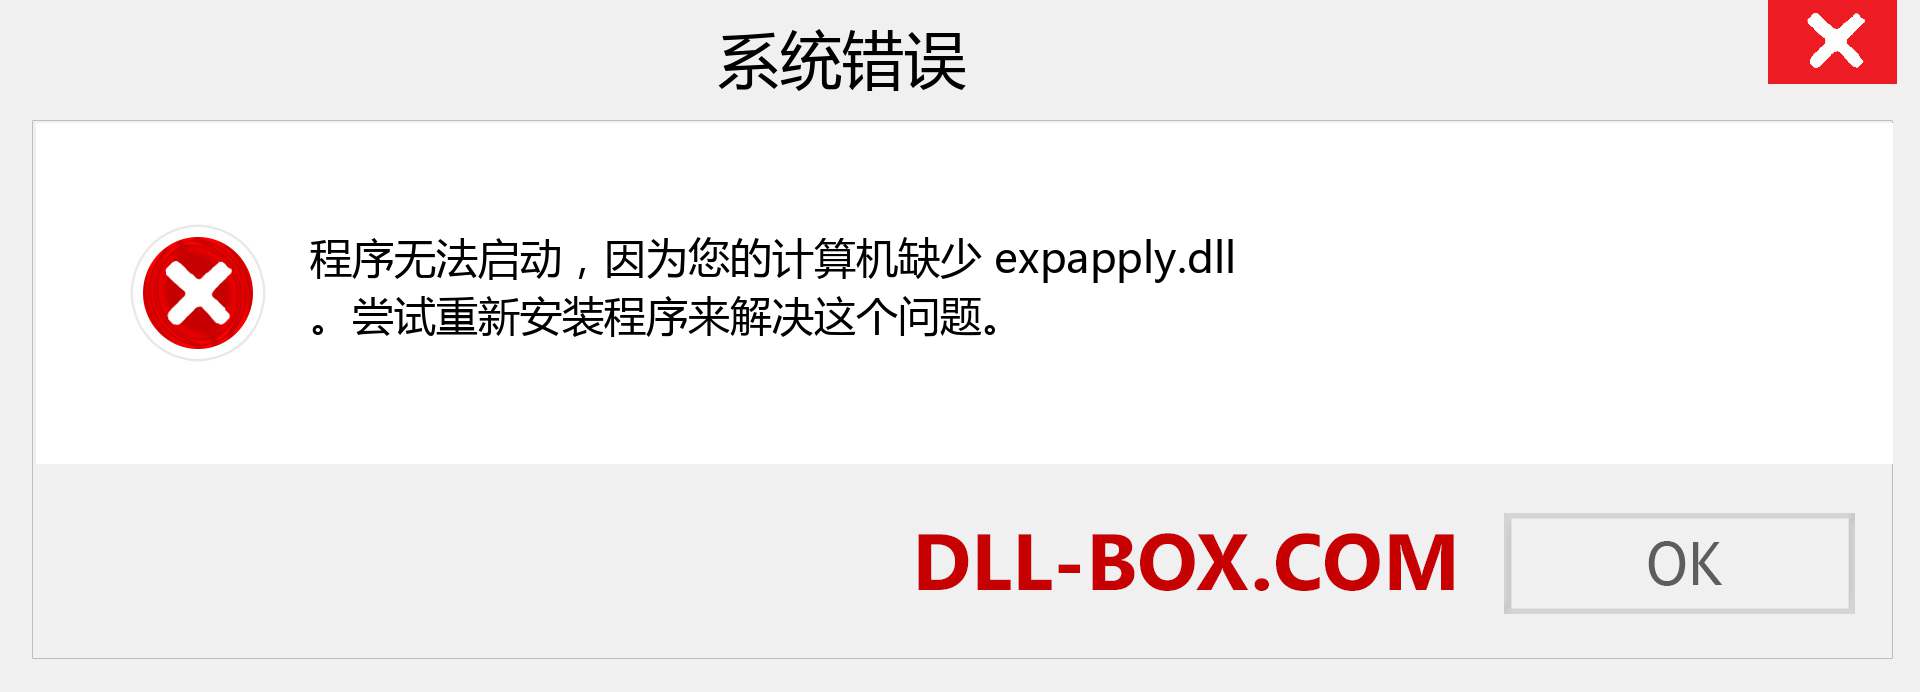 expapply.dll 文件丢失？。 适用于 Windows 7、8、10 的下载 - 修复 Windows、照片、图像上的 expapply dll 丢失错误